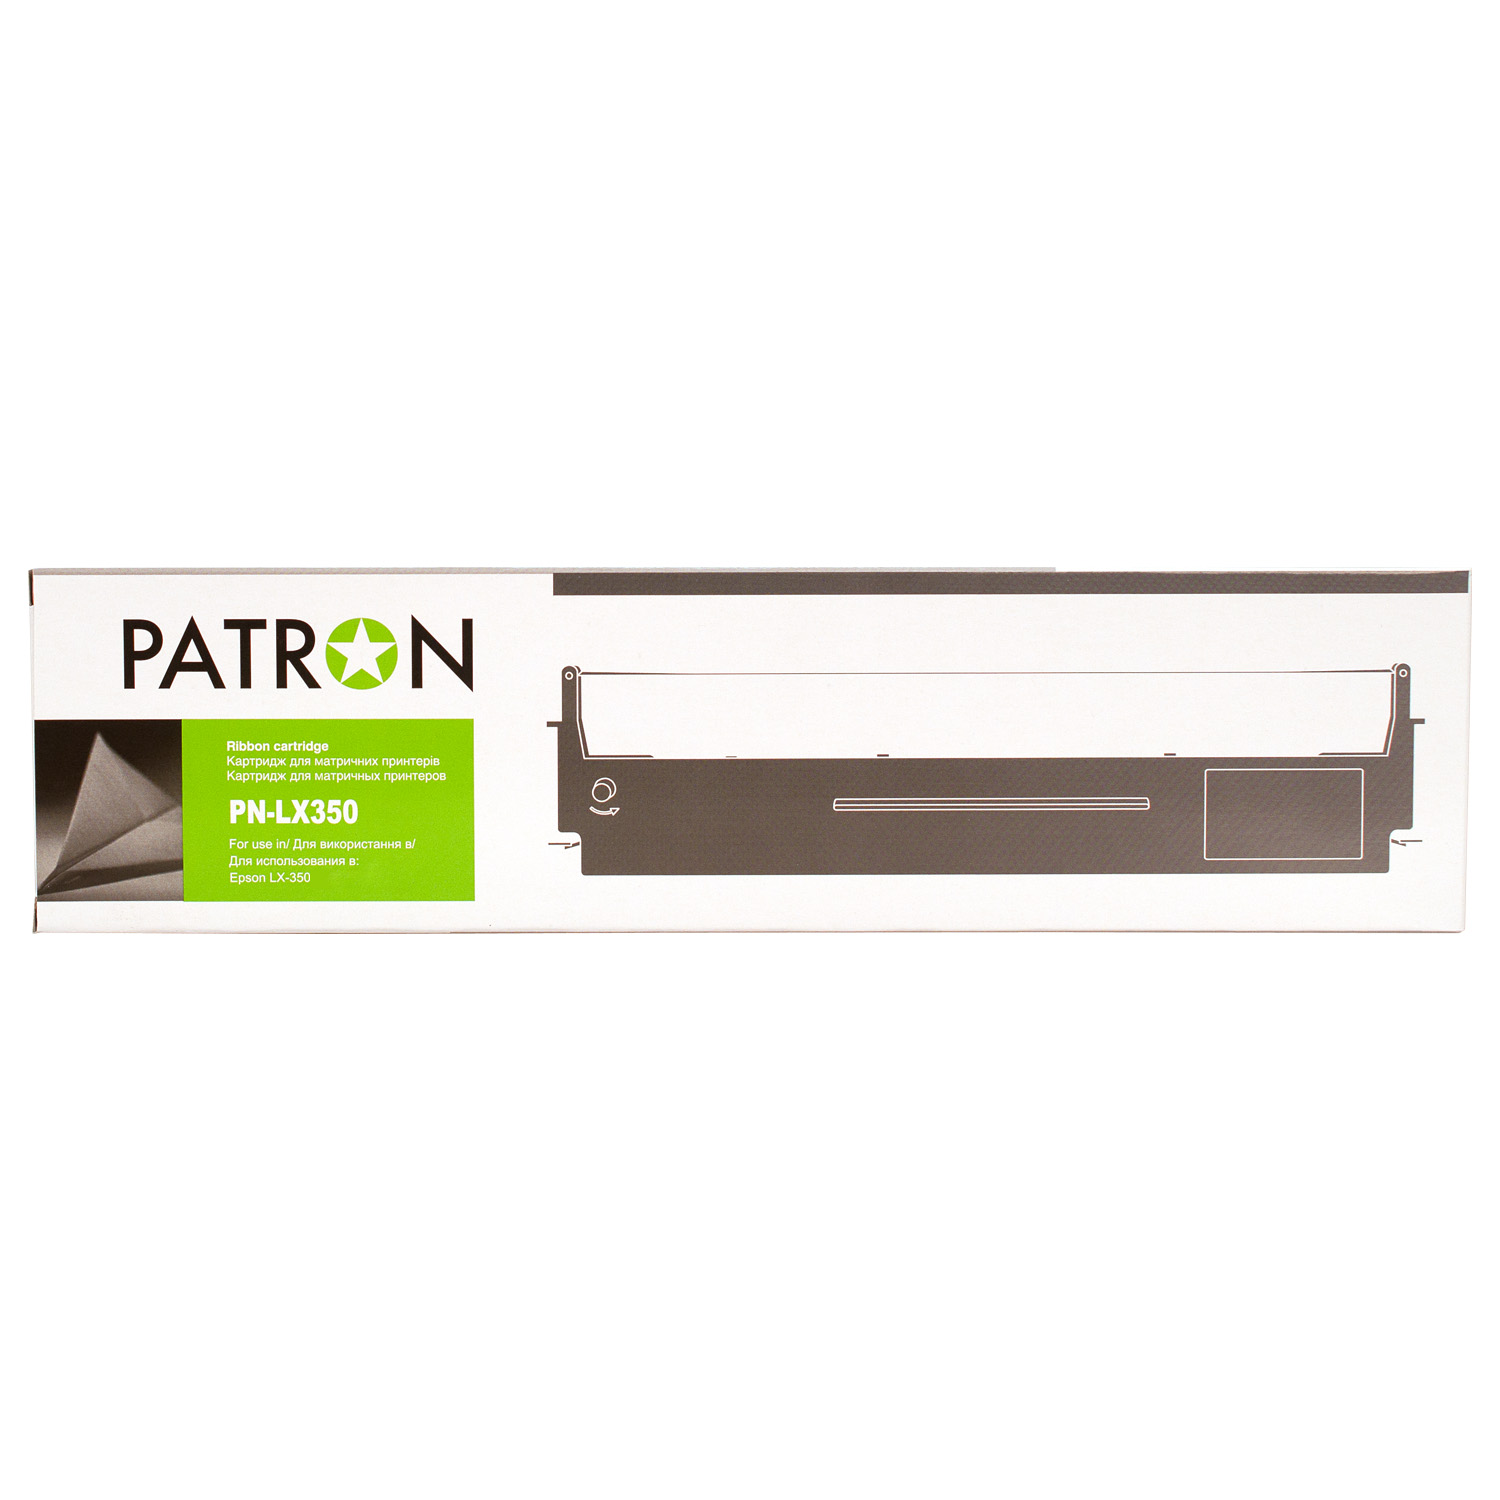 КАРТРИДЖ EPSON MX-80 (PN-LX-350/MX-80) PATRON				 